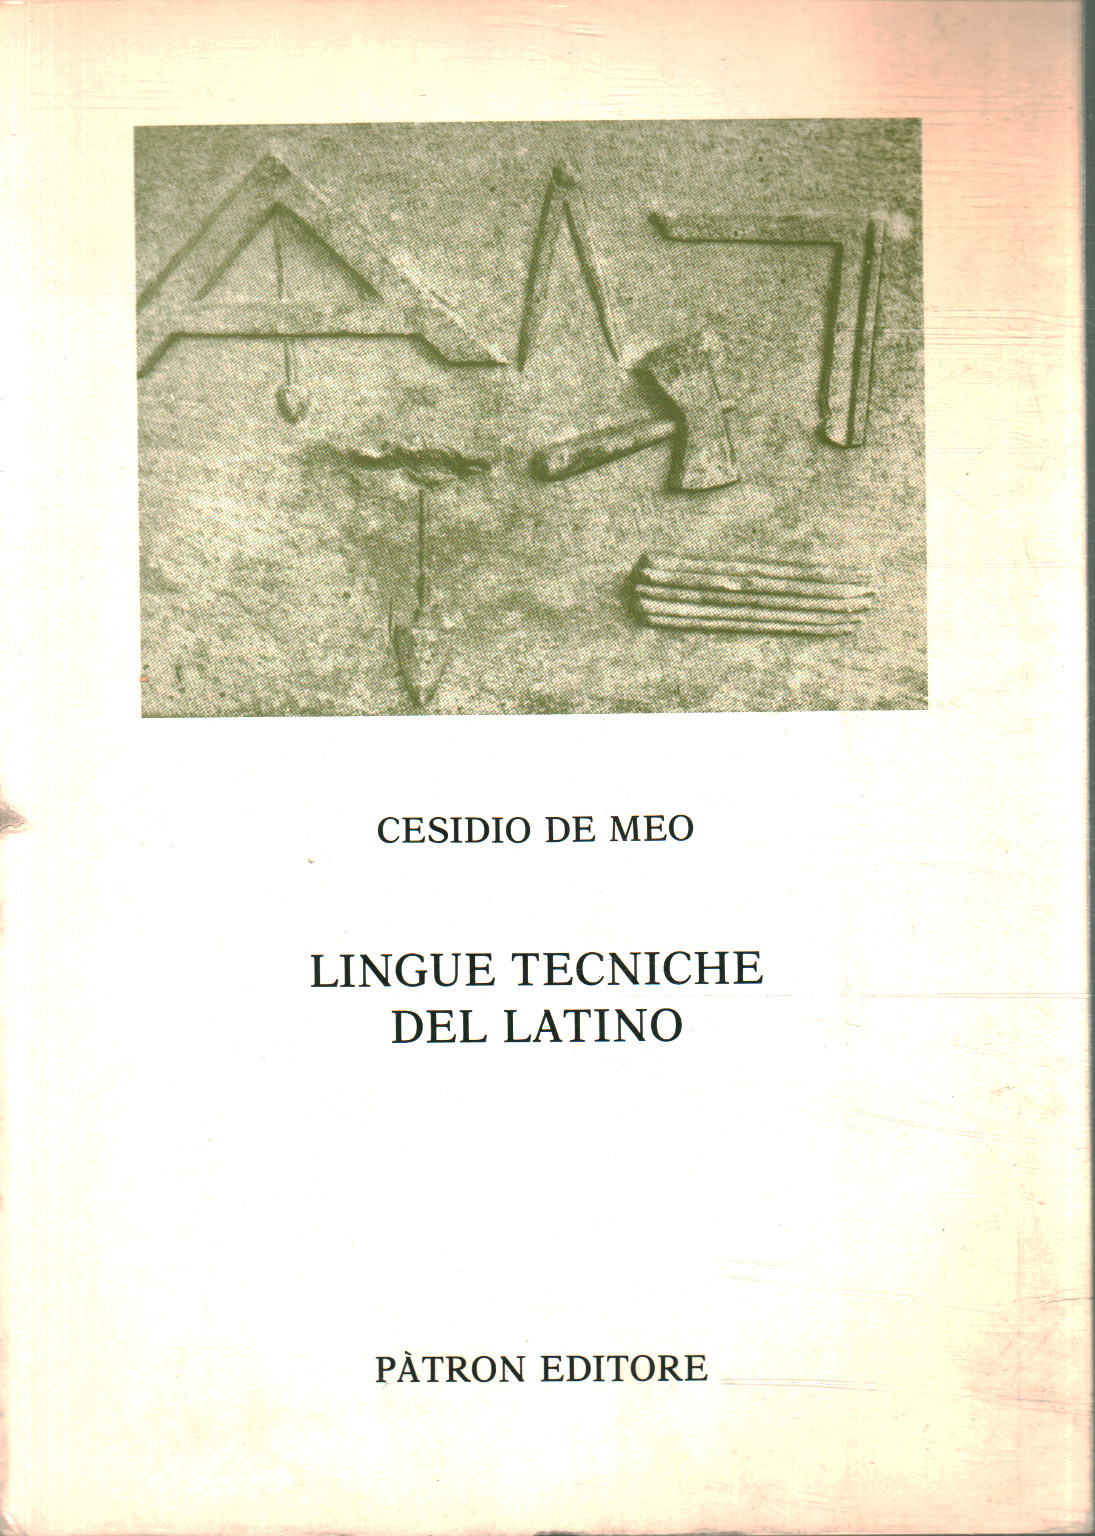 Idiomas técnicos del latín, Cesidio De Meo